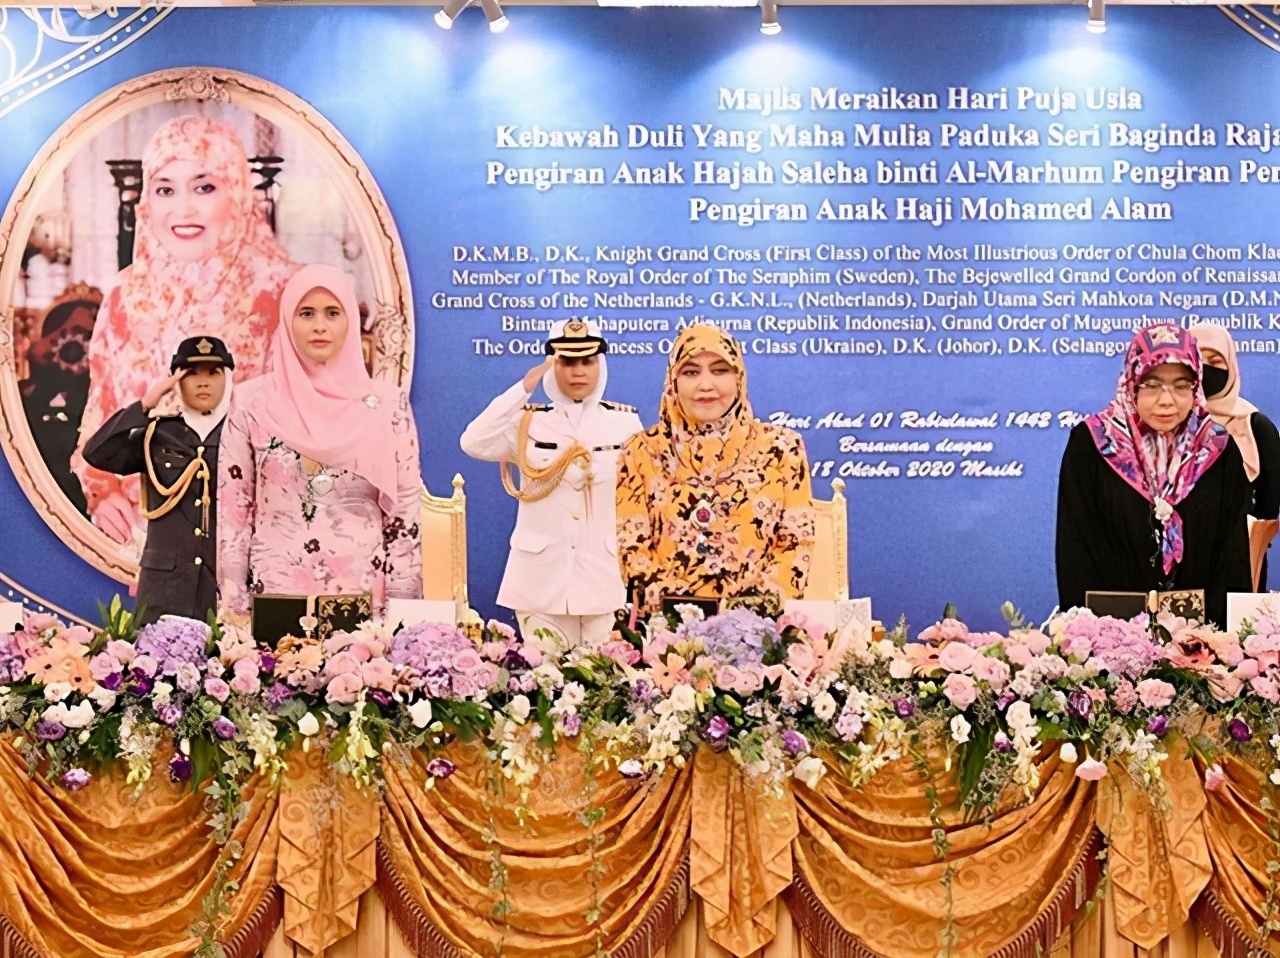 文莱（Brunei）王子 阿都·马丁（Abdul Mateen） 颜值与才华兼俱收割少女心 – 大橙传媒超科技(马来西亚)集团